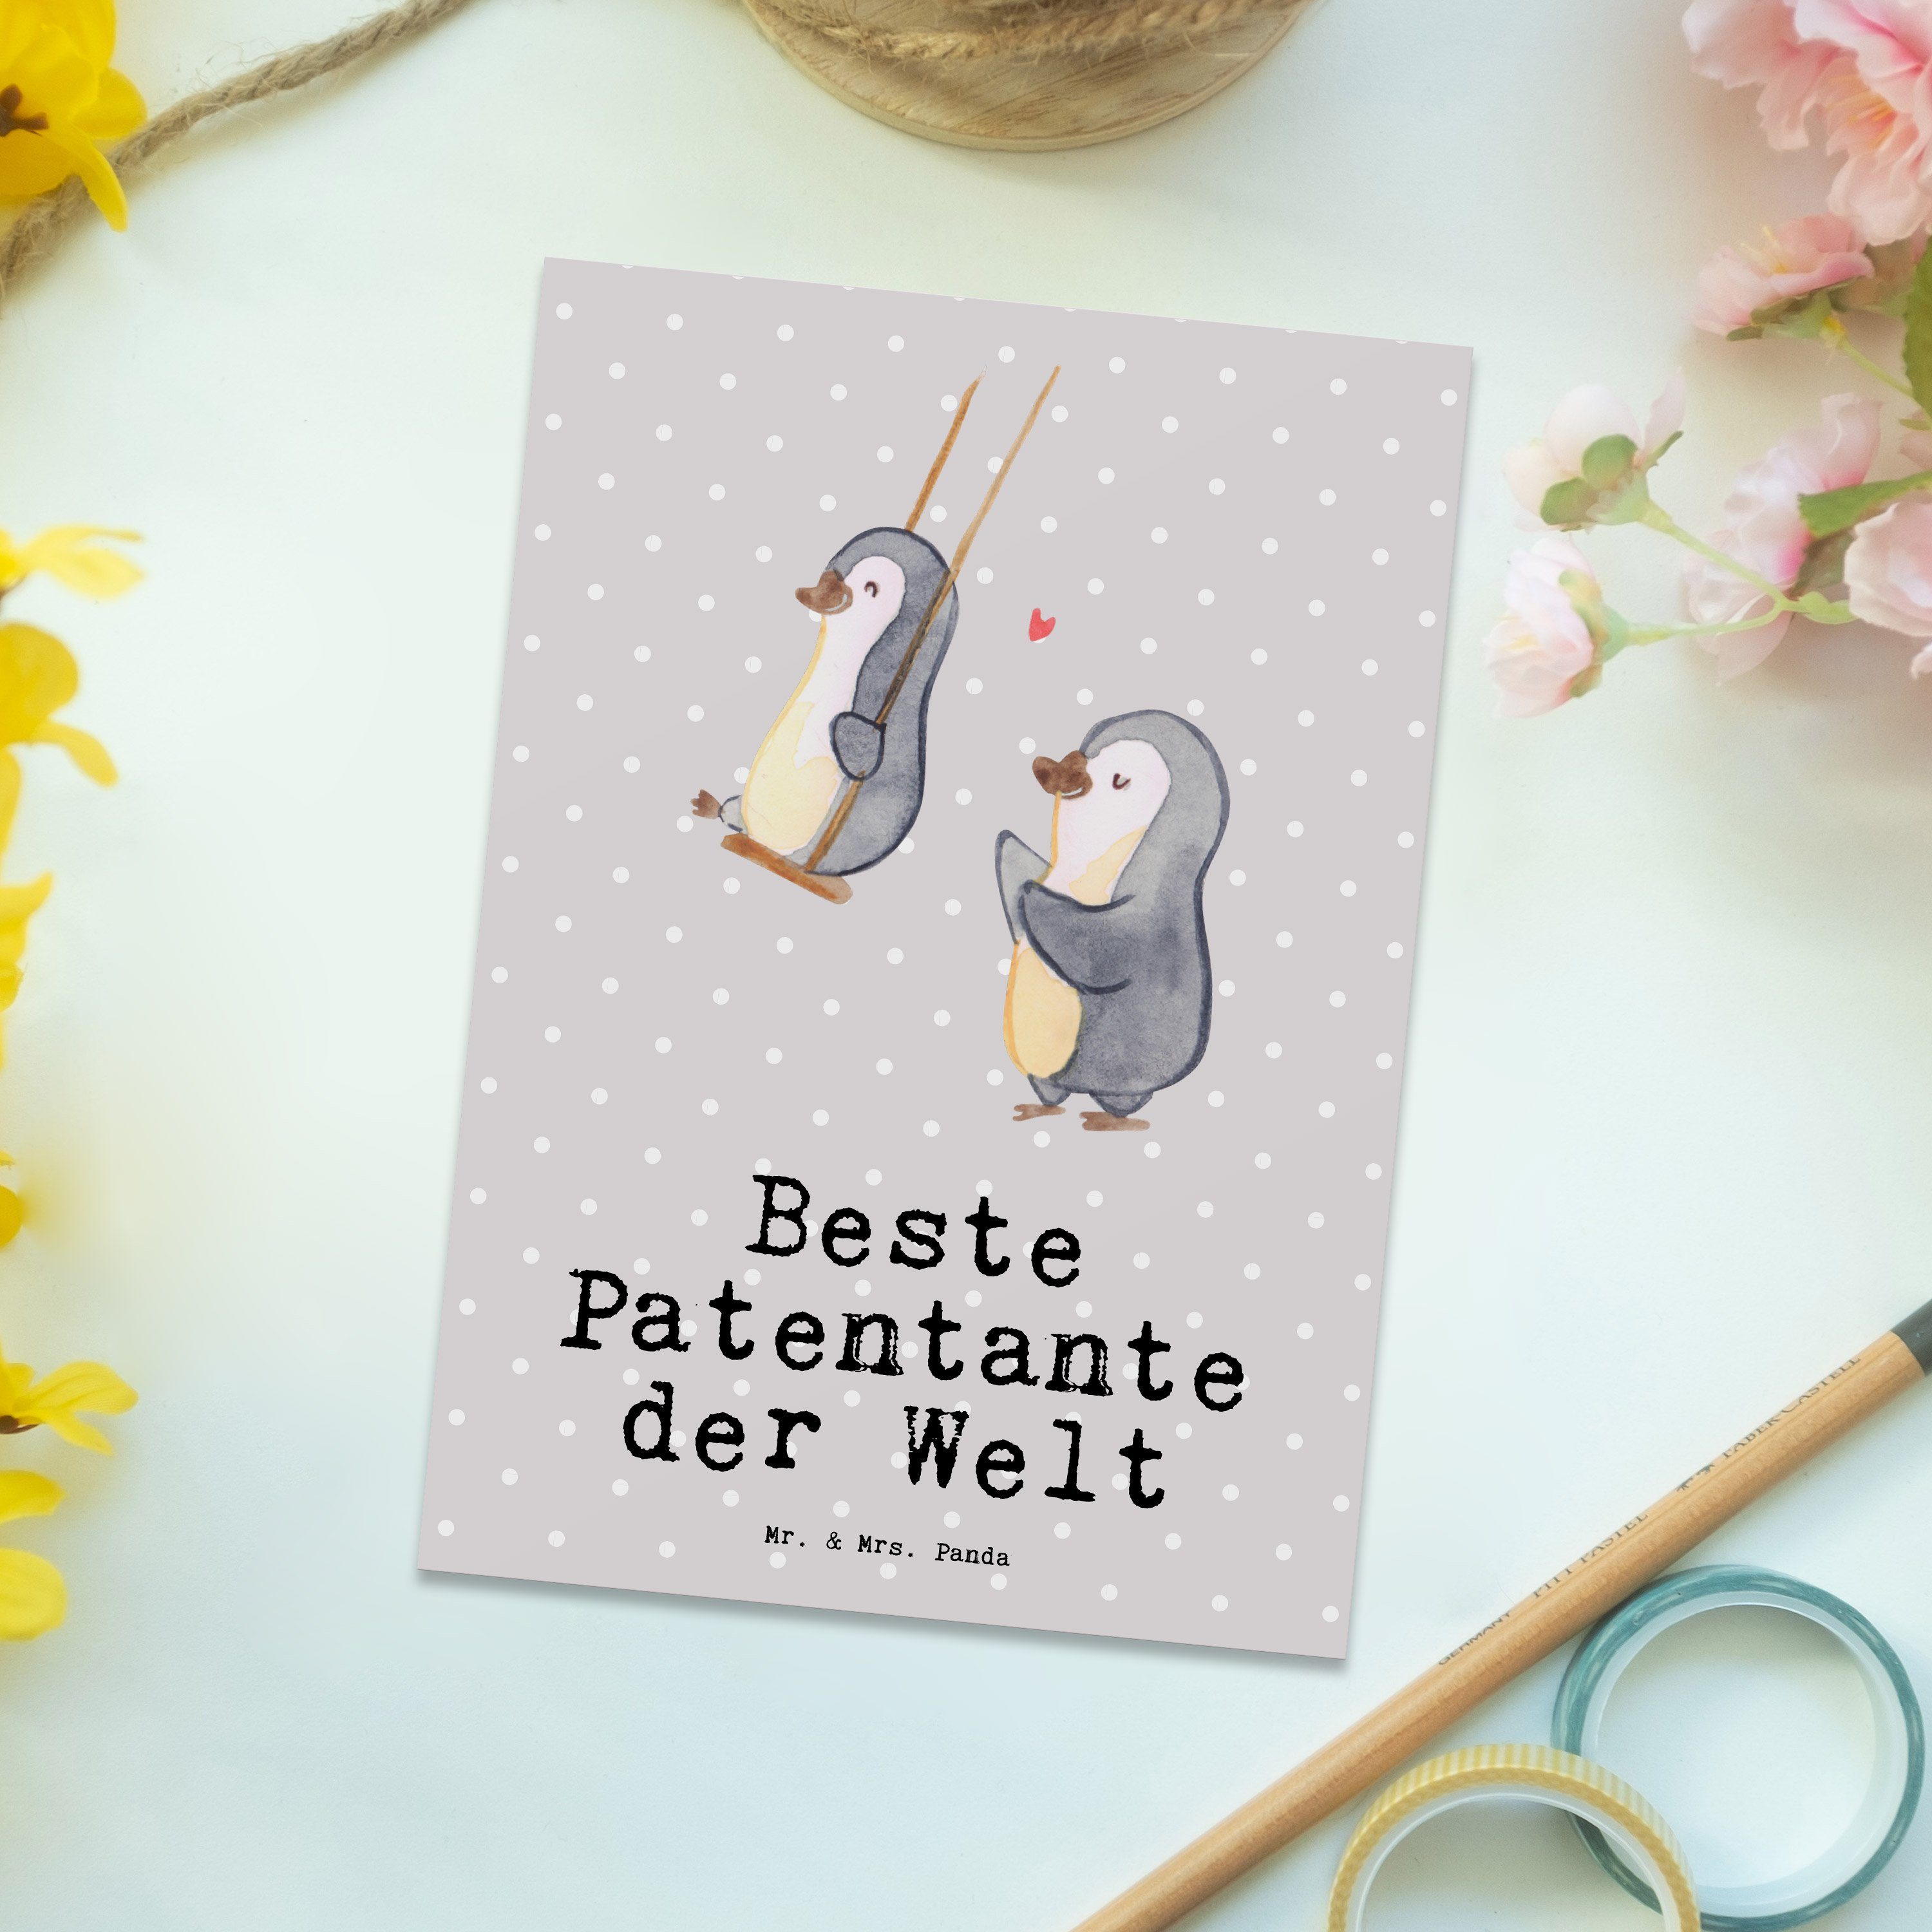 Mr. & Mrs. Panda Patentante Pinguin Geschenk, Postkarte - der Grau Welt Geschenk Pastell Beste 